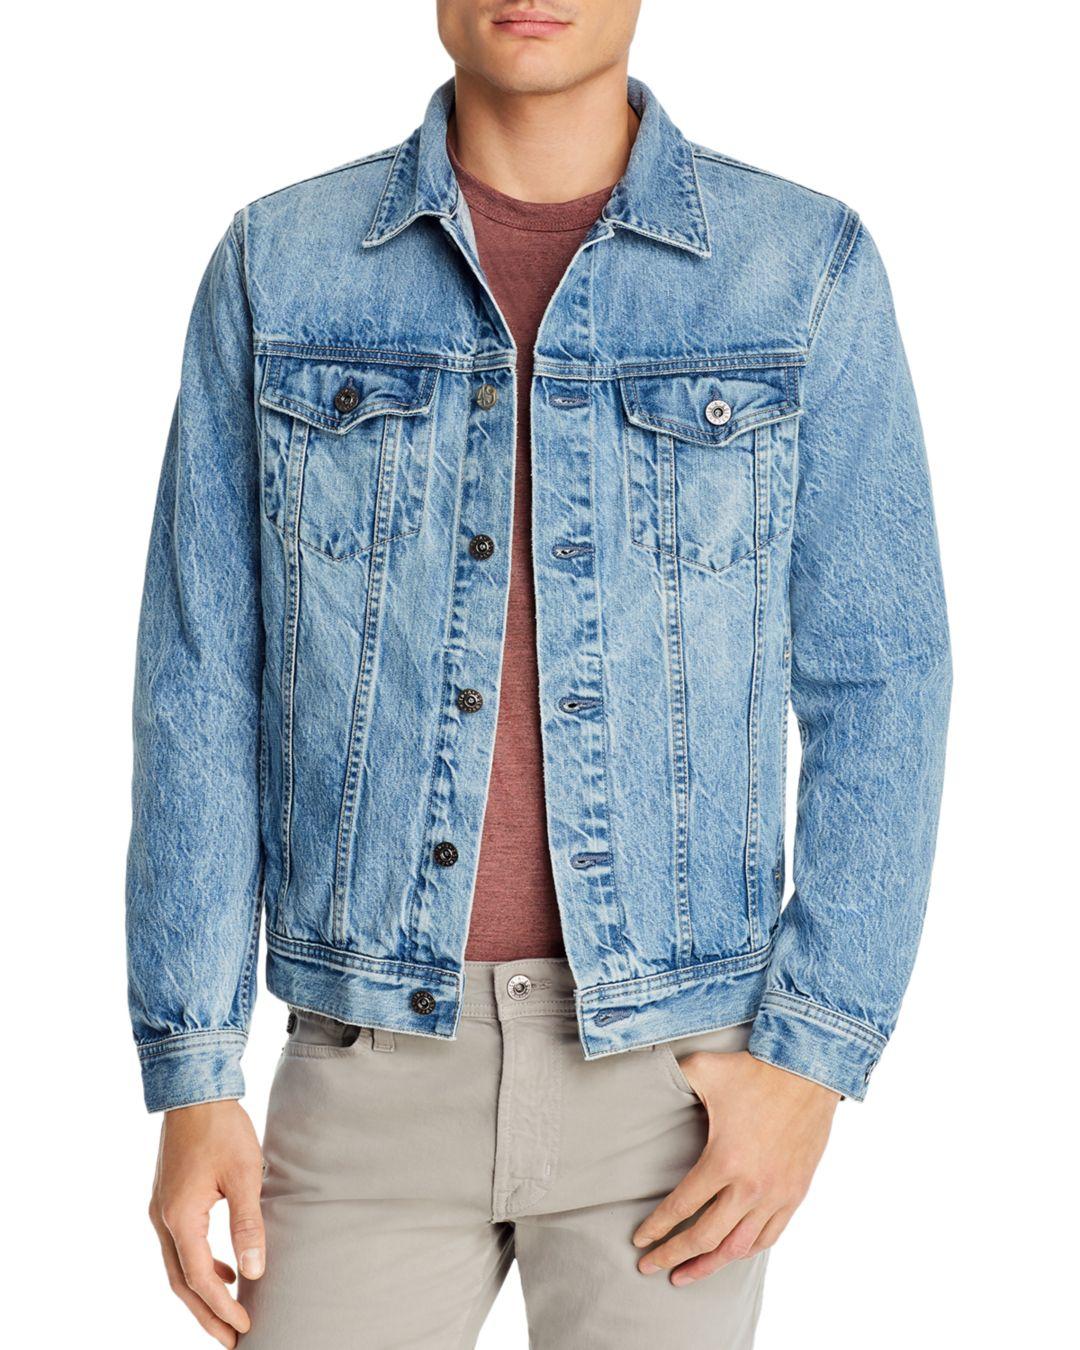 AG Jeans Slim Fit Denim Jacket in Blue for Men - Lyst